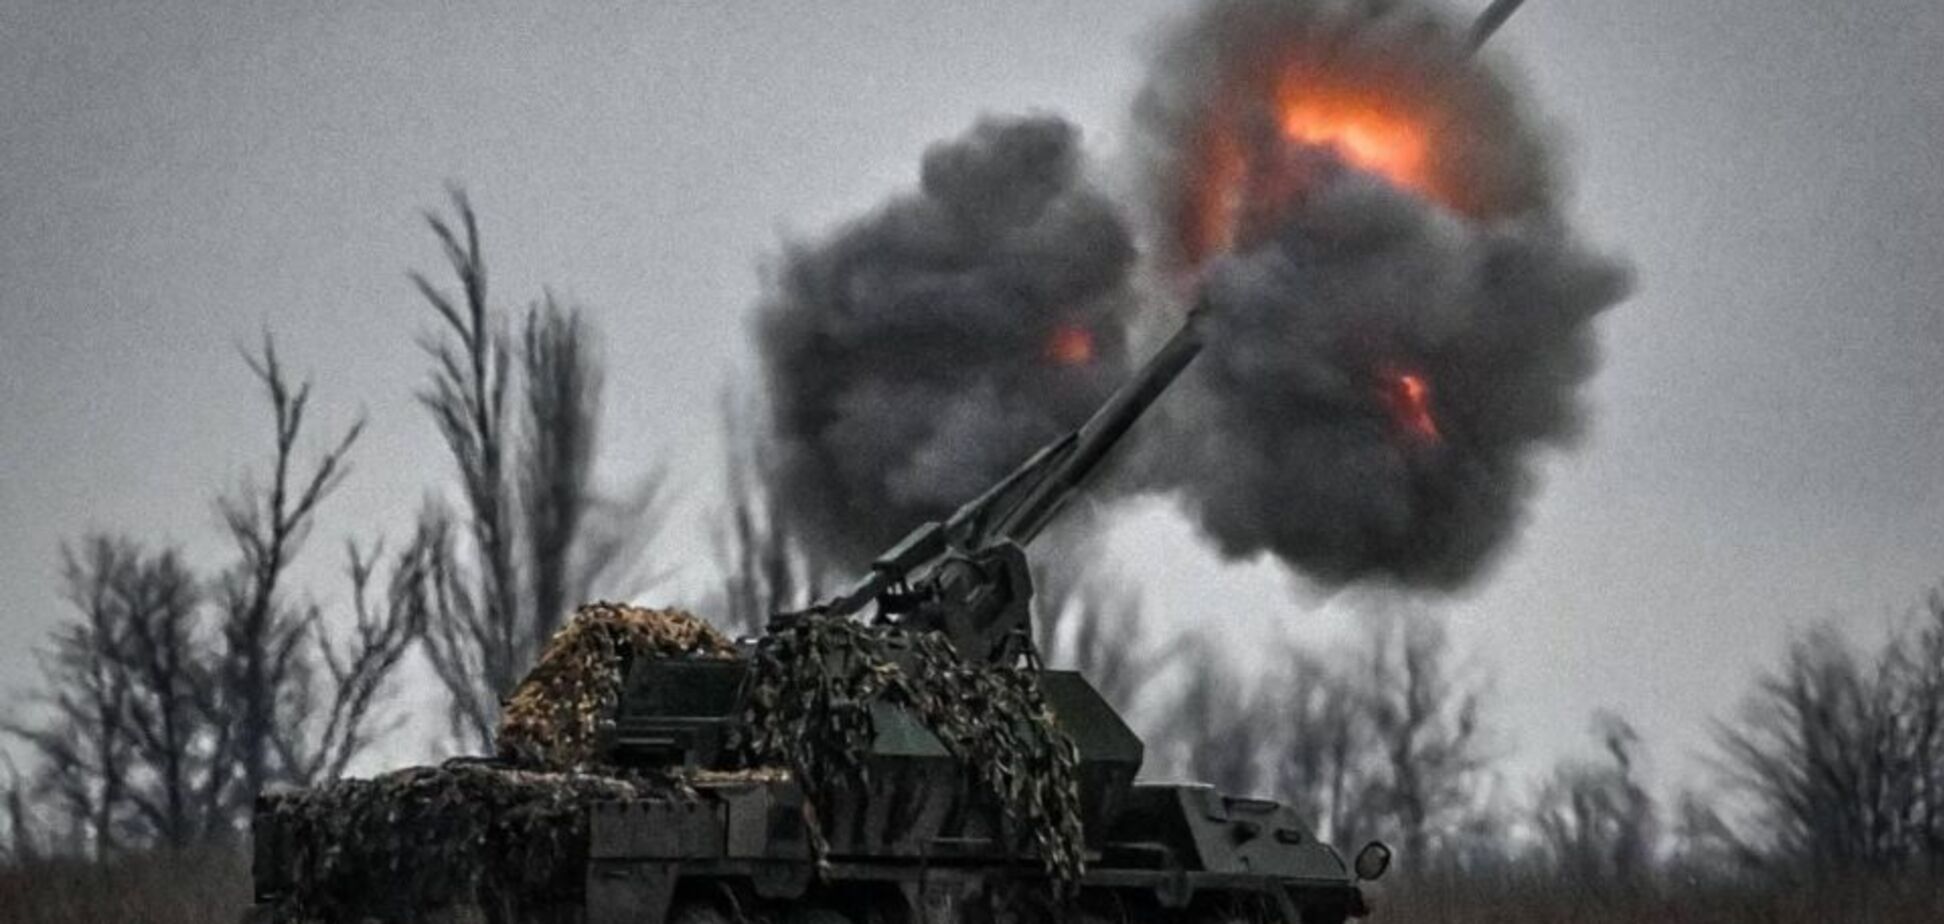 Самый большой штурм за два года: враг атаковал ВСУ под Авдеевкой 36 танками и потерял треть. Фото